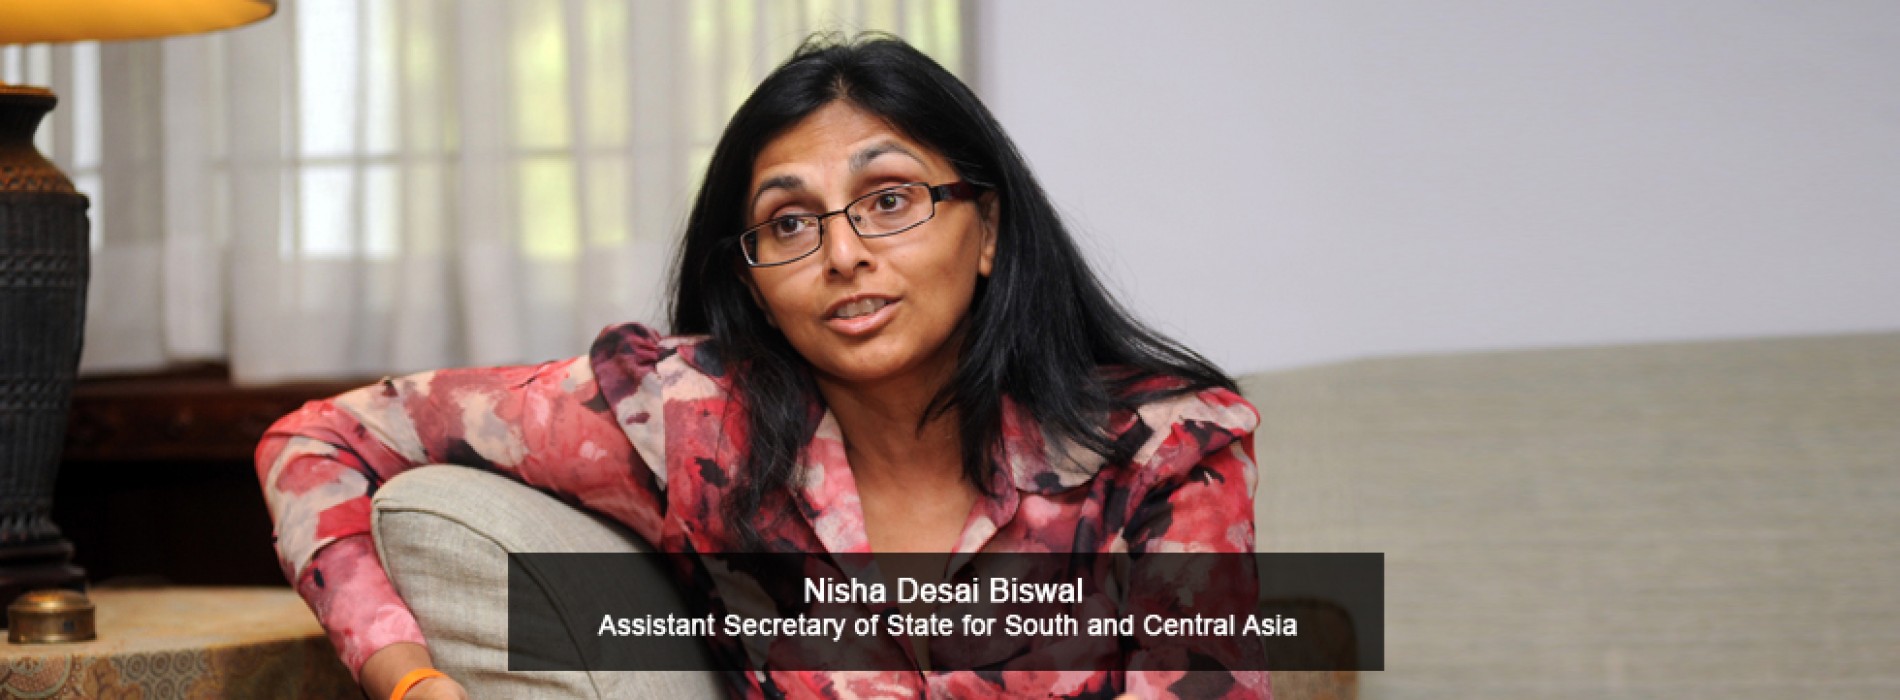 US diplomat Nisha Desai Biswal to visit India for talks